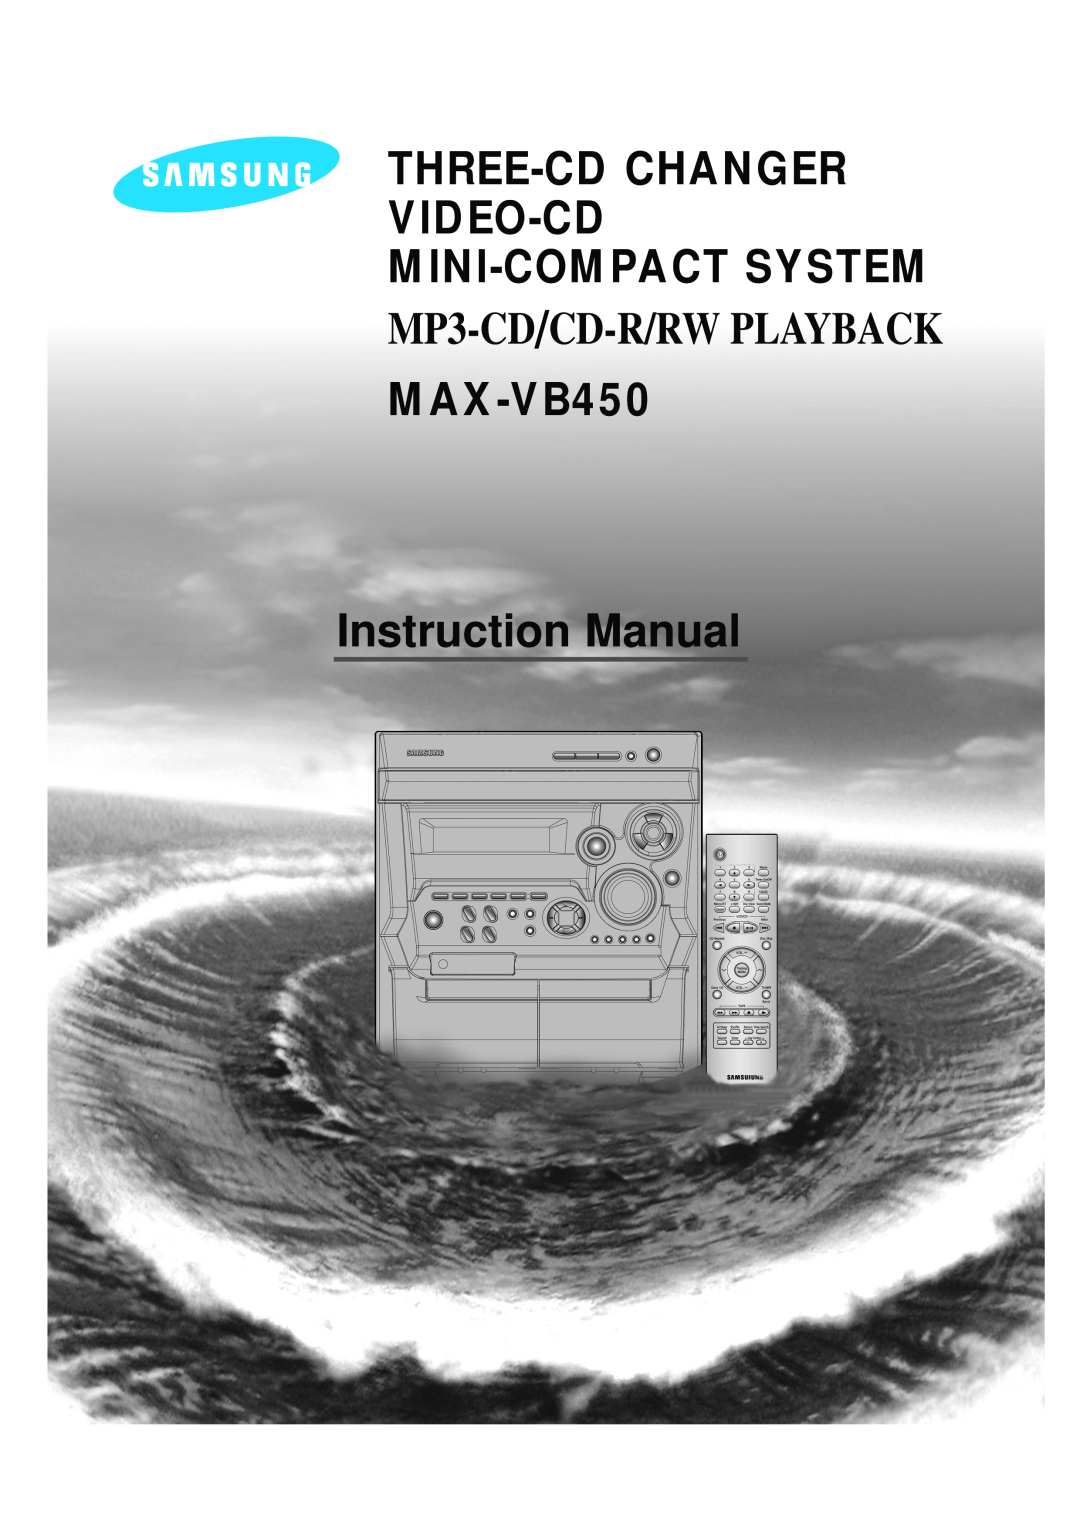 Samsung MAX-VB450 instruction manual Three-Cdchanger Video-Cd Mini-Compactsystem, MP3-CD/CD-R/RWPLAYBACK 